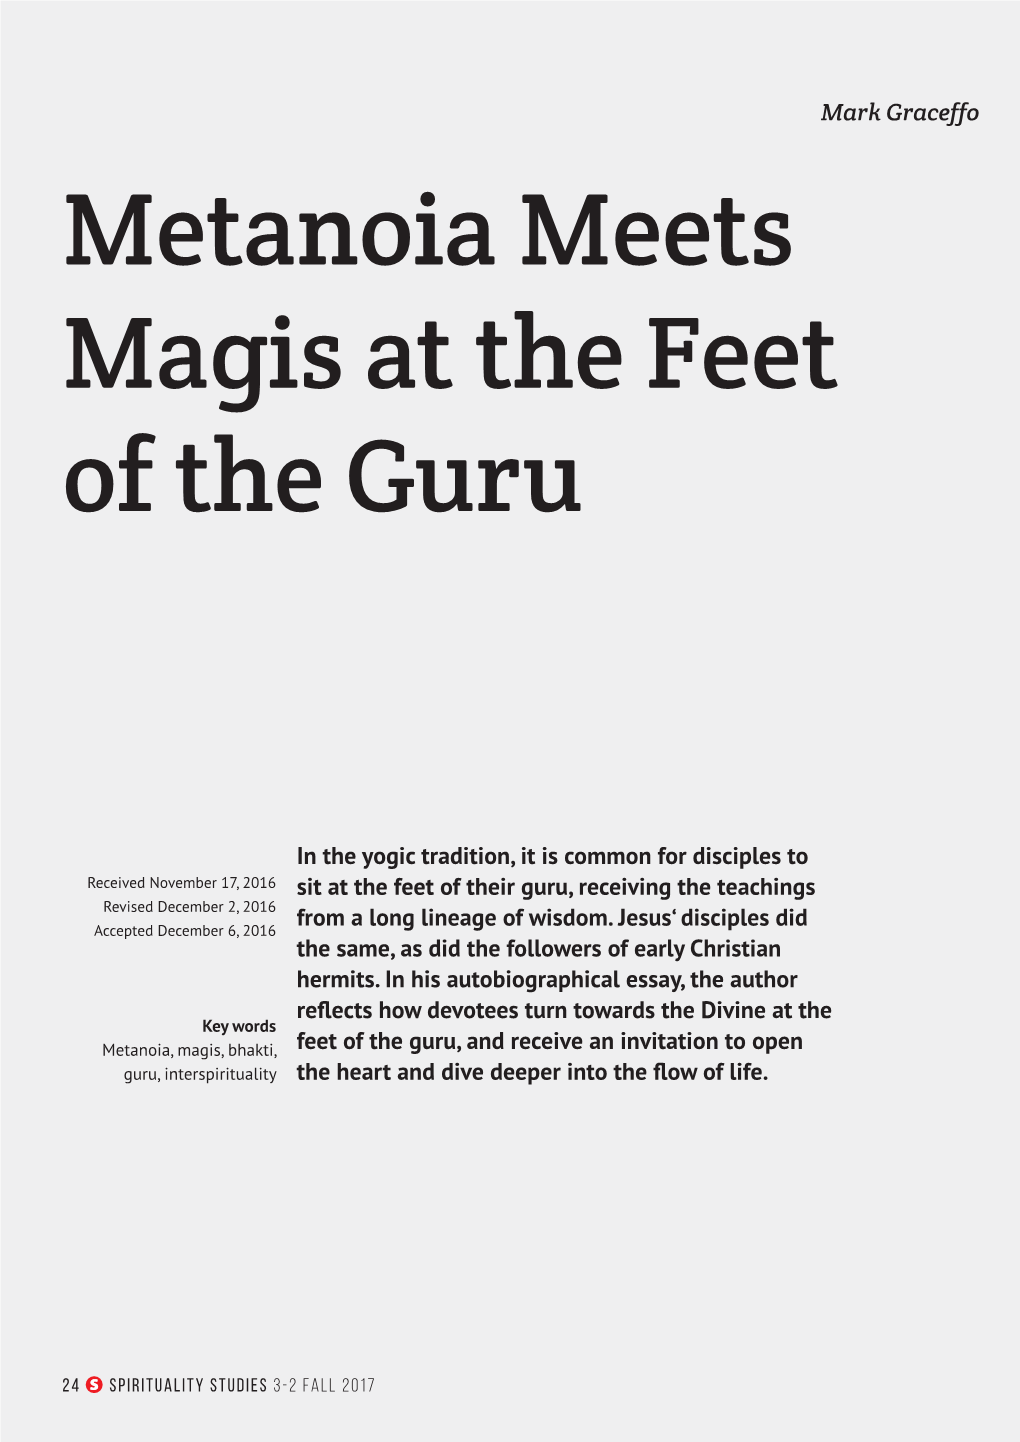 Metanoia Meets Magis at the Feet of the Guru